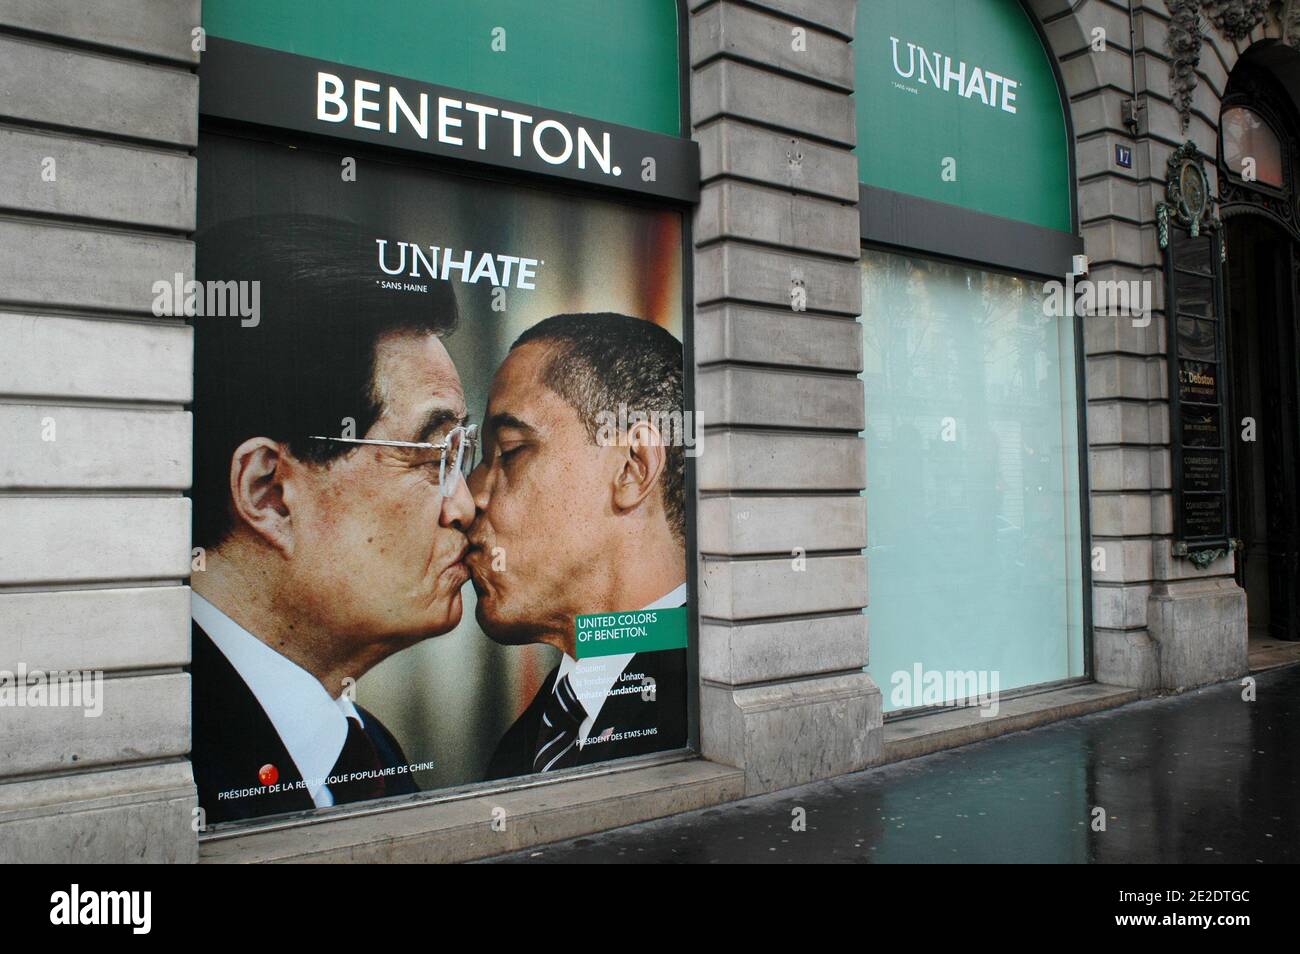 Carteles de la nueva campaña publicitaria de Benetton 'Unhate' están en  exhibición en sus escaparates emblemáticos, Place de l'Opera en París,  Francia, 17 de noviembre de 2011. Muestran varias imágenes de opositores